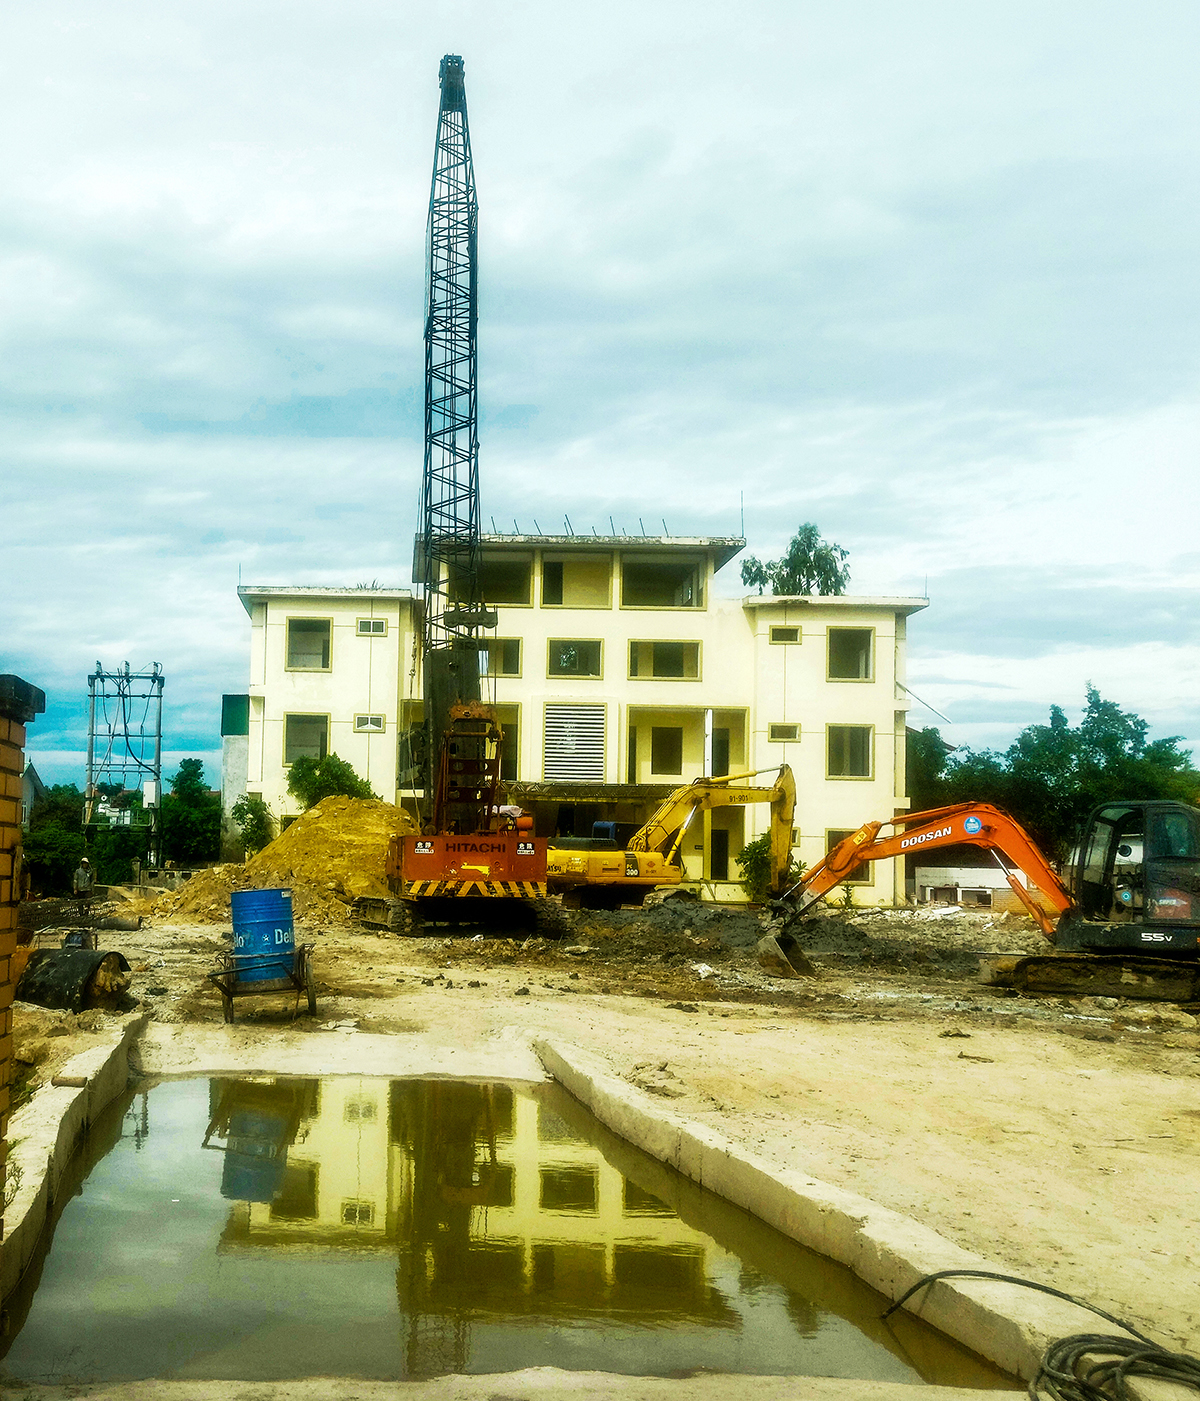 Hoạt động xây dựng không phép tại dự án Bệnh viện Y học cổ truyền Thành Tâm.